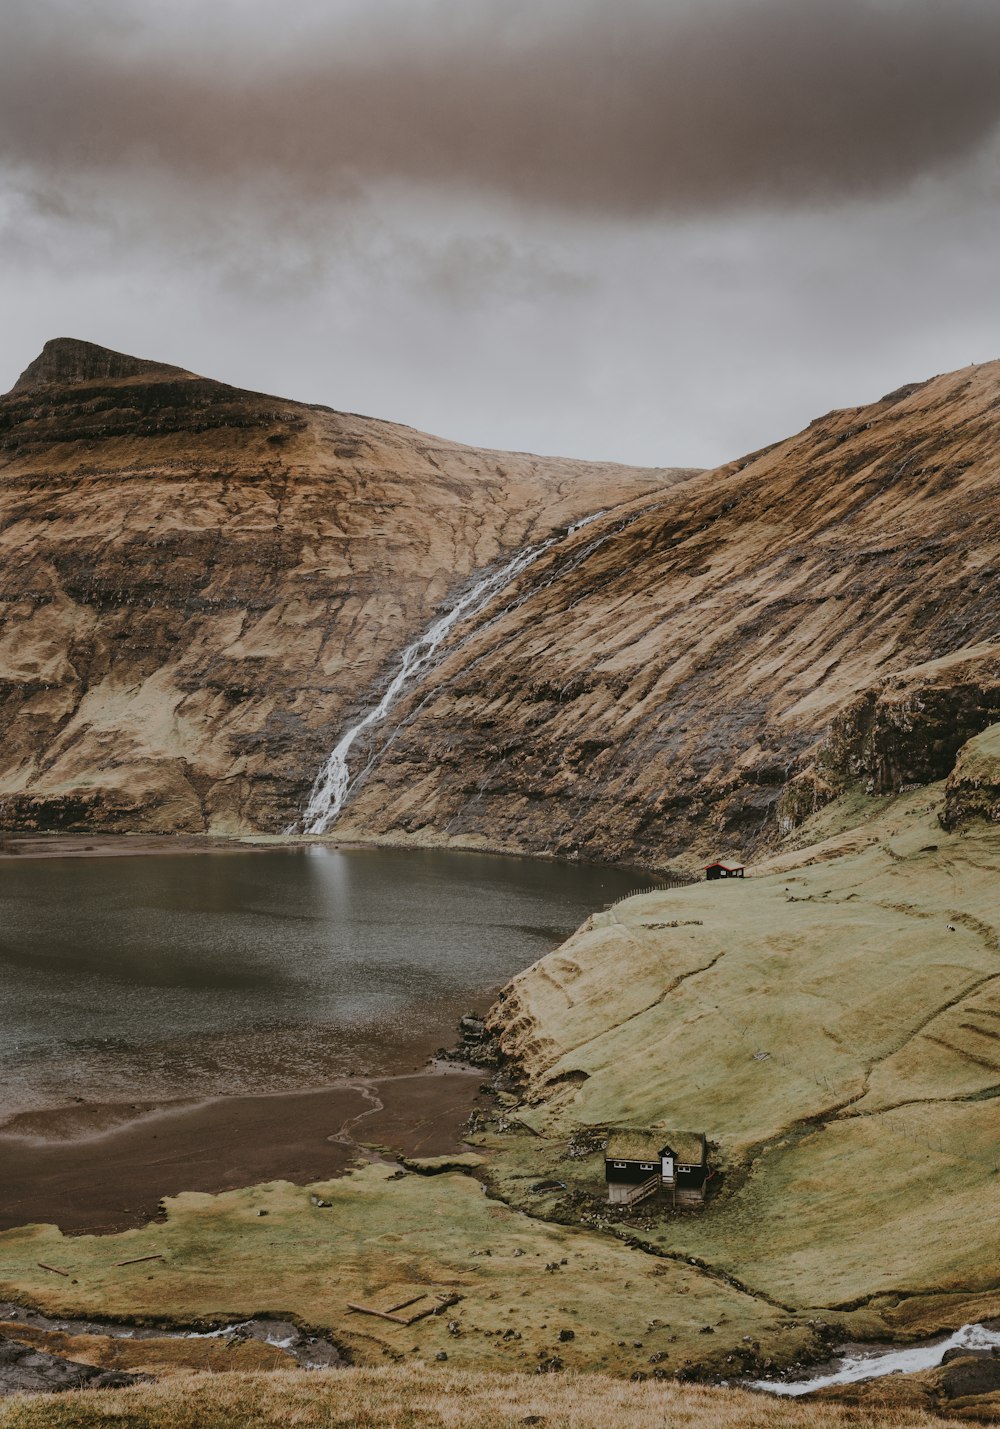 Montagne de roche brune avec des chutes d’eau